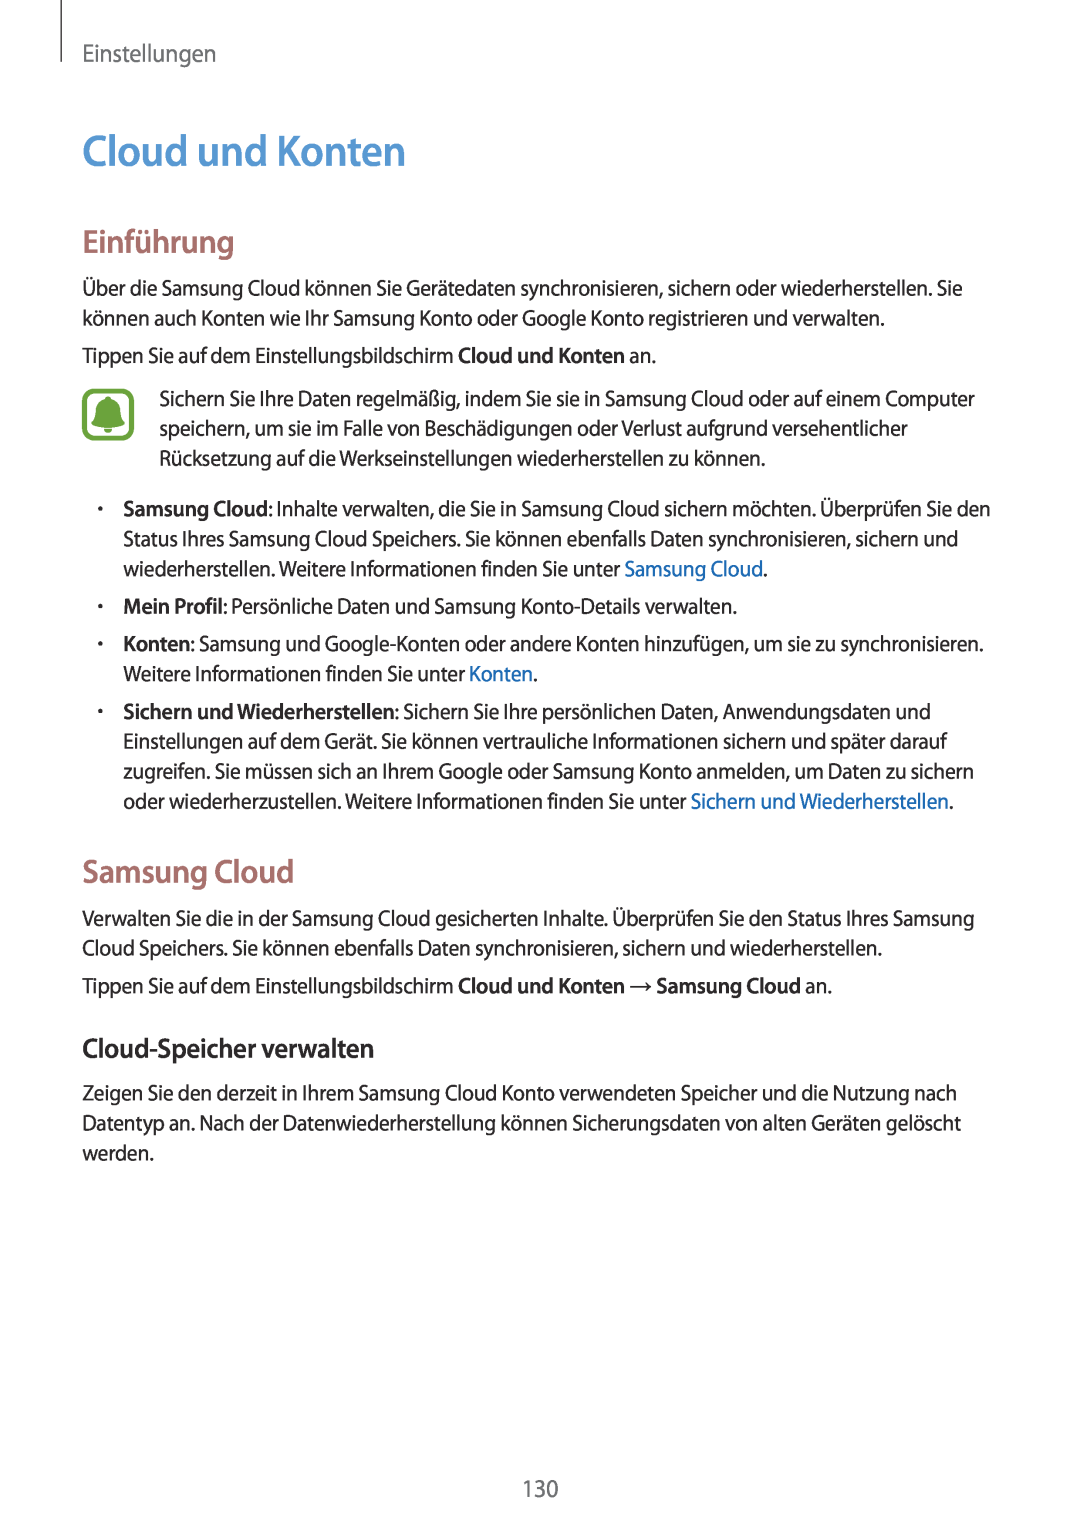 Samsung SM-J530FZSACOS manual Cloud und Konten, Samsung Cloud, Cloud-Speicher verwalten, Einführung, Einstellungen 